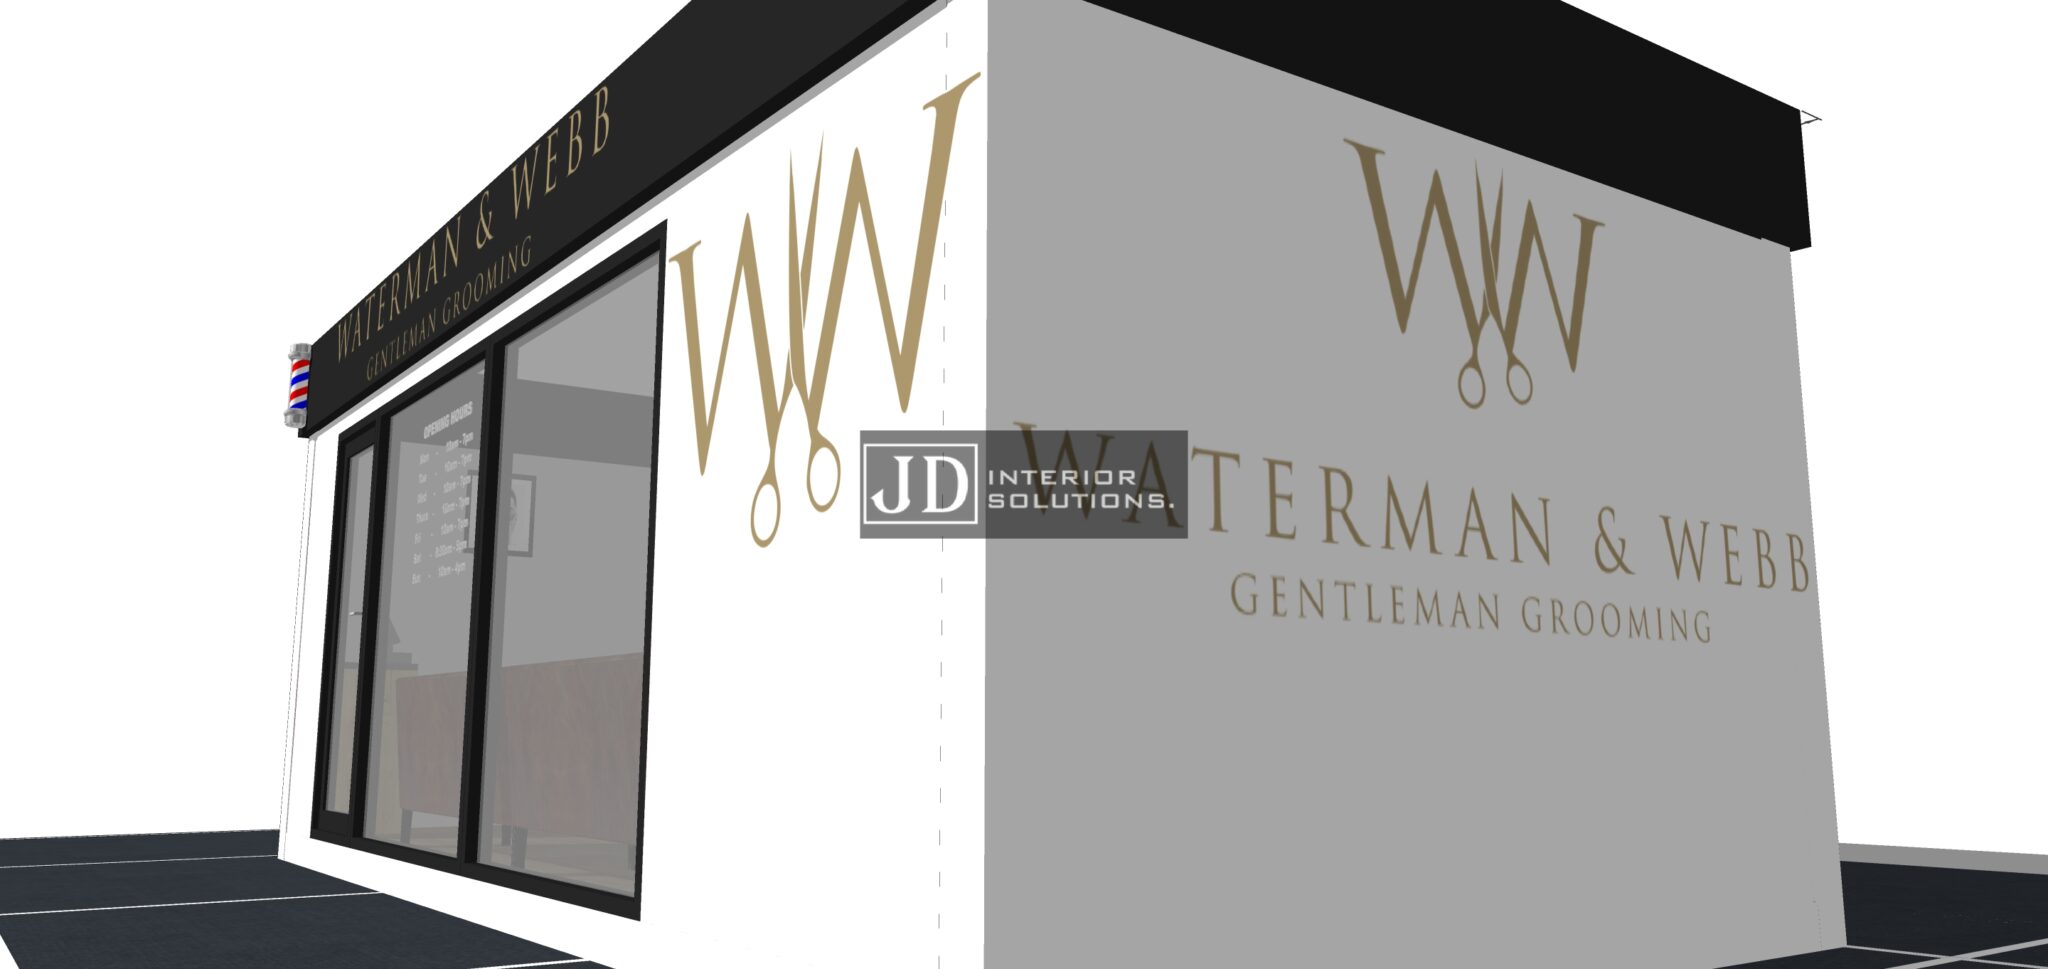 Waterman & Webb - 6.8m x 3.4m